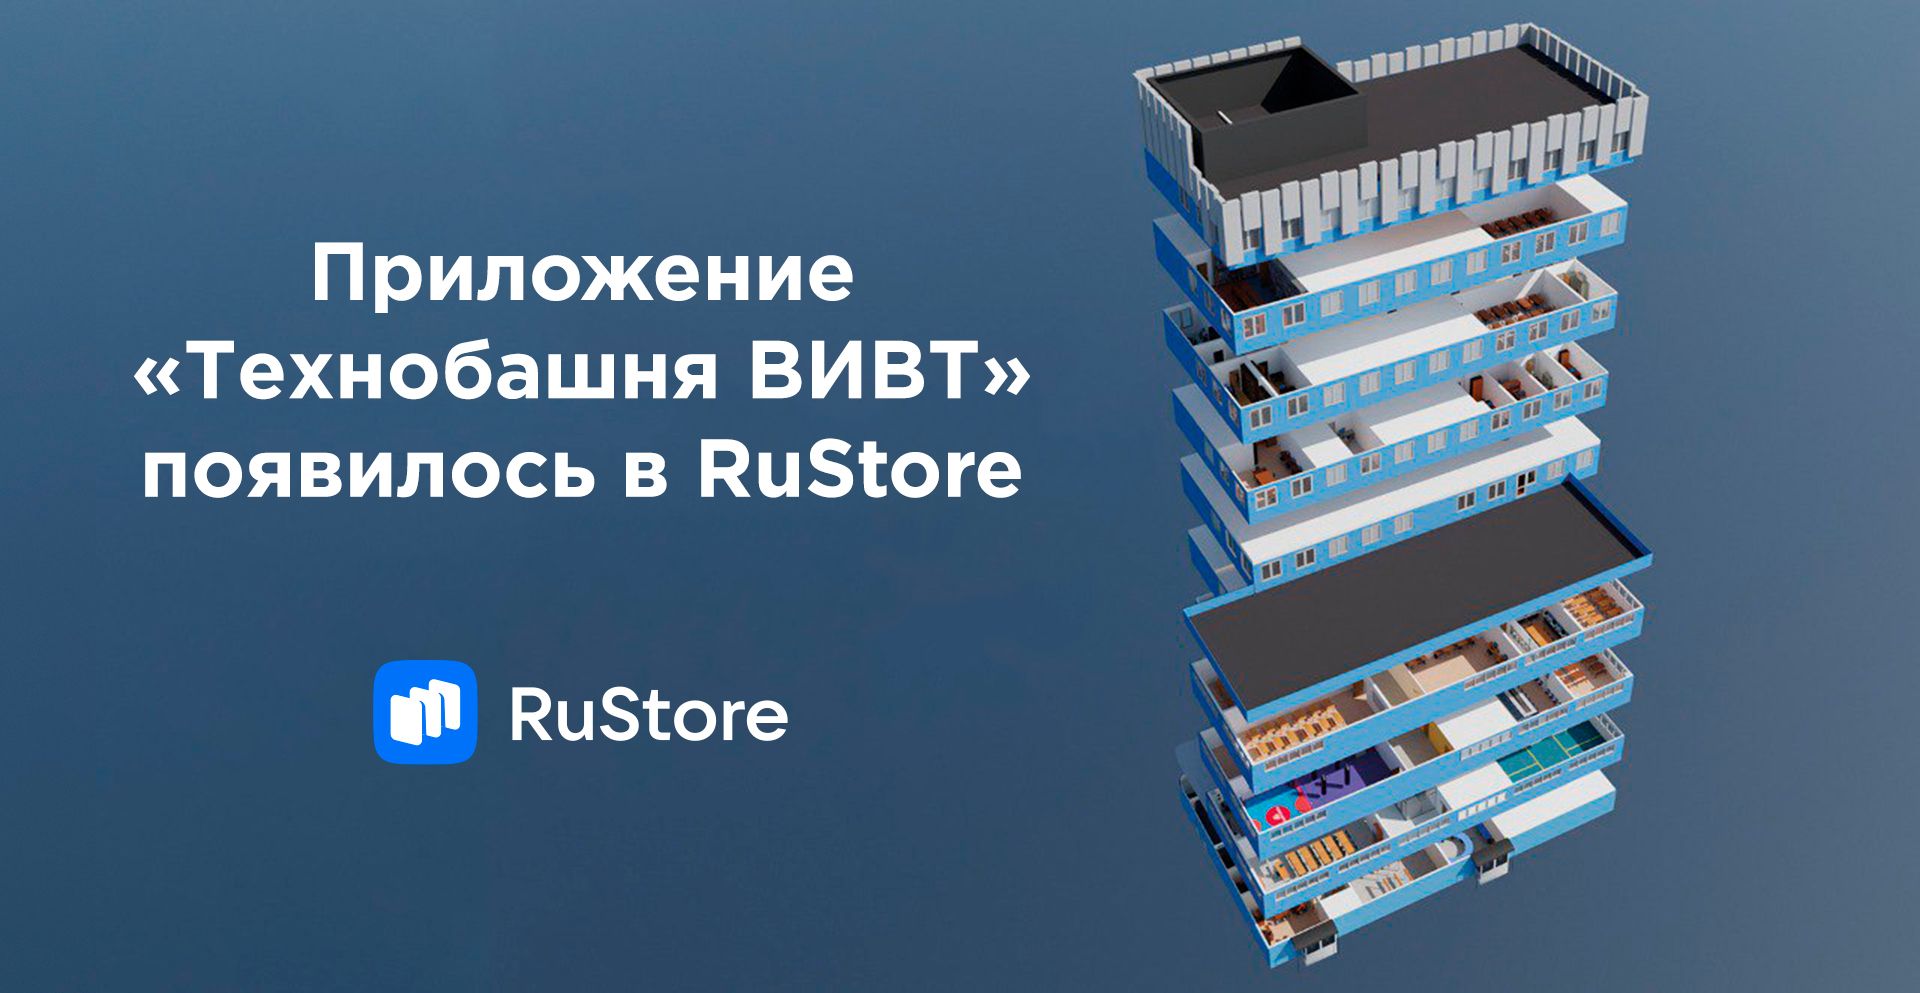 В RuStore появилось приложение «Технобашня ВИВТ»